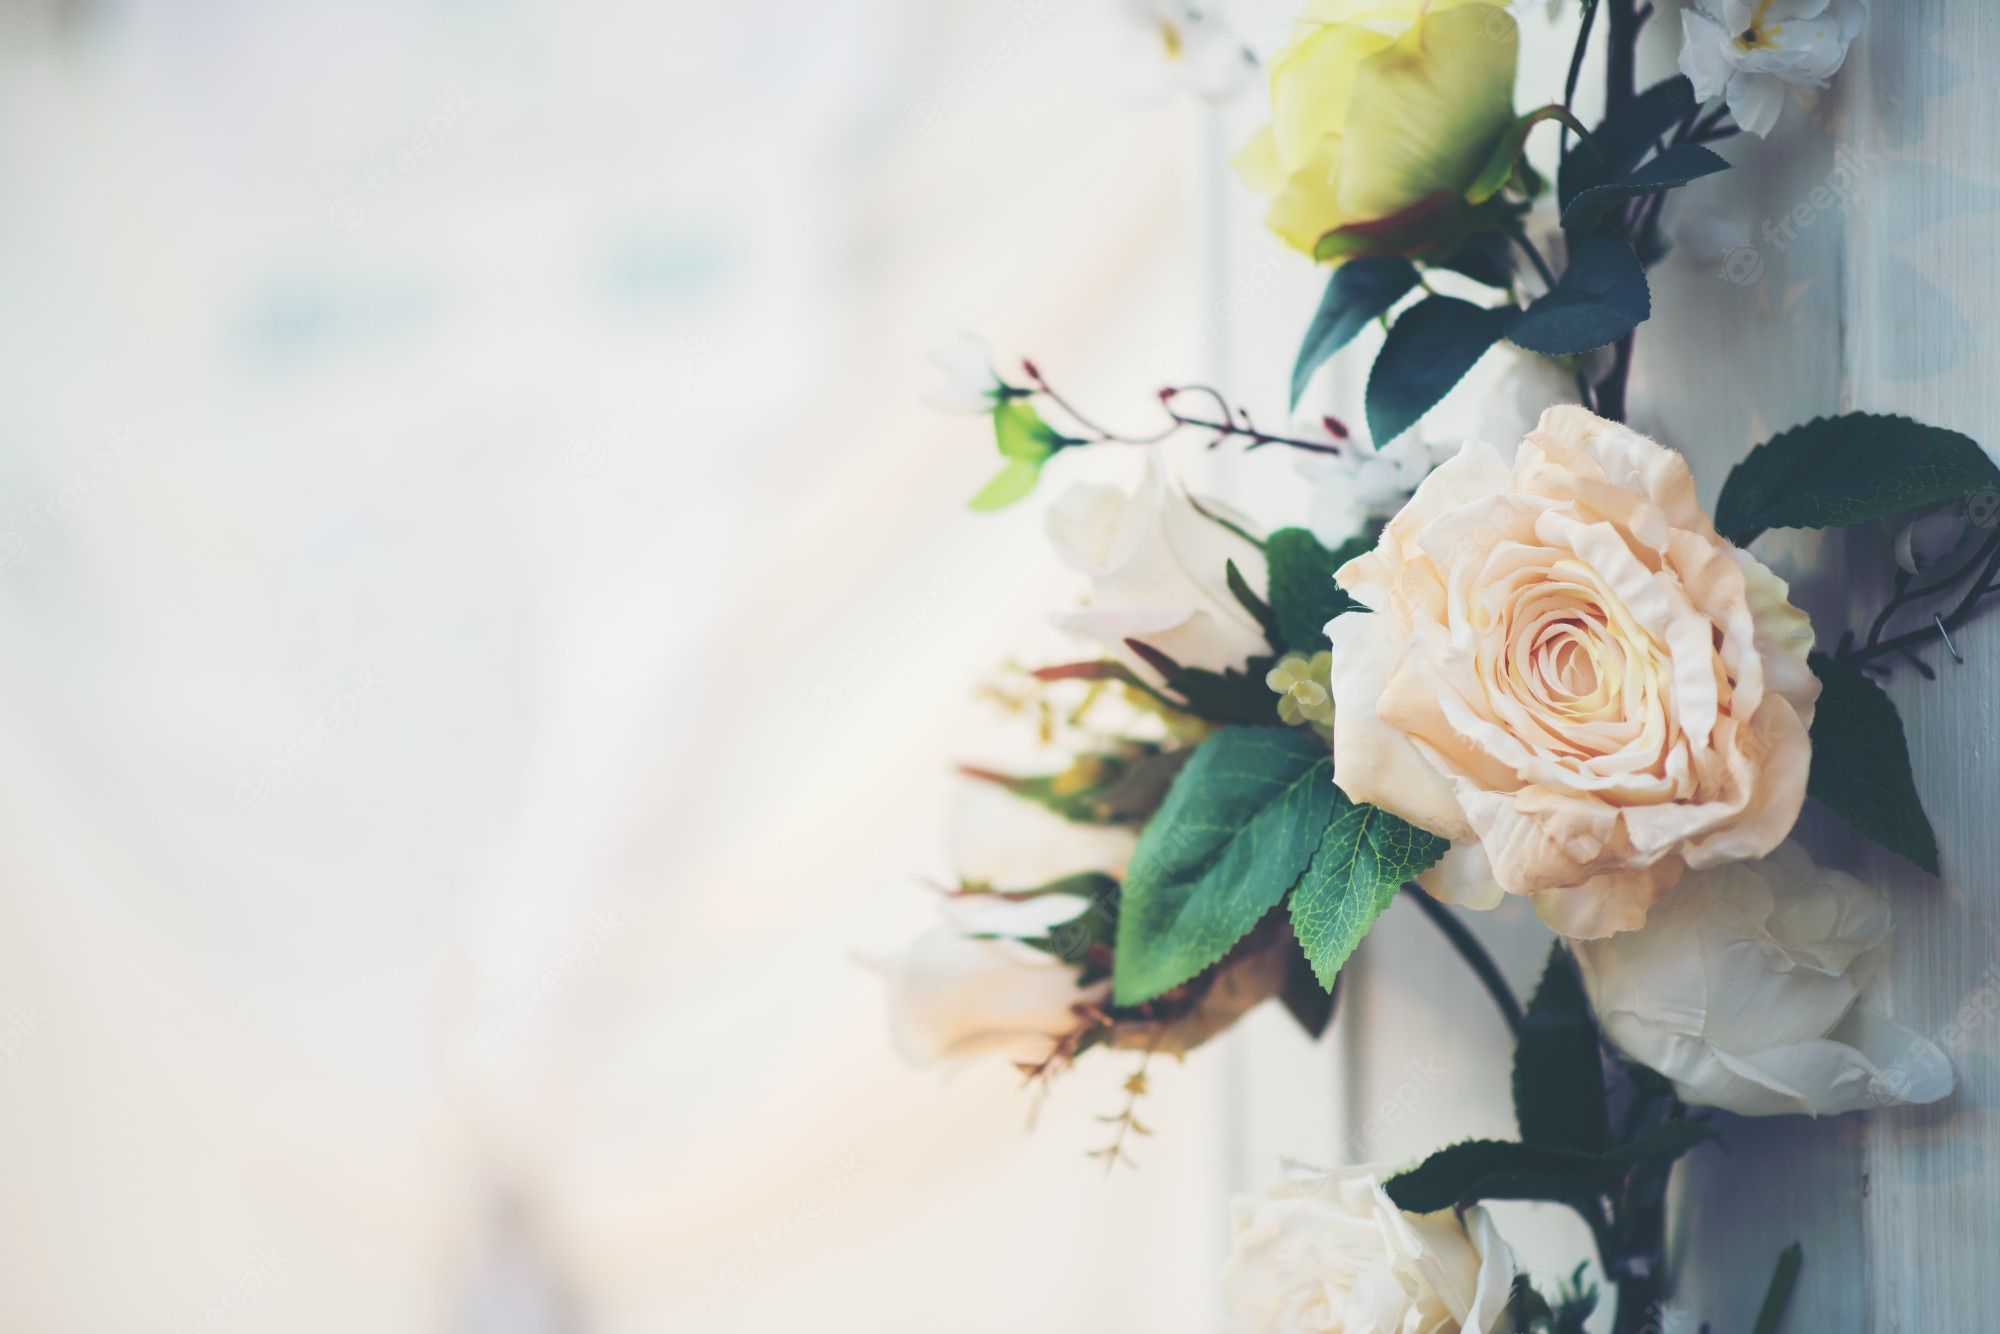 Wedding Background Image